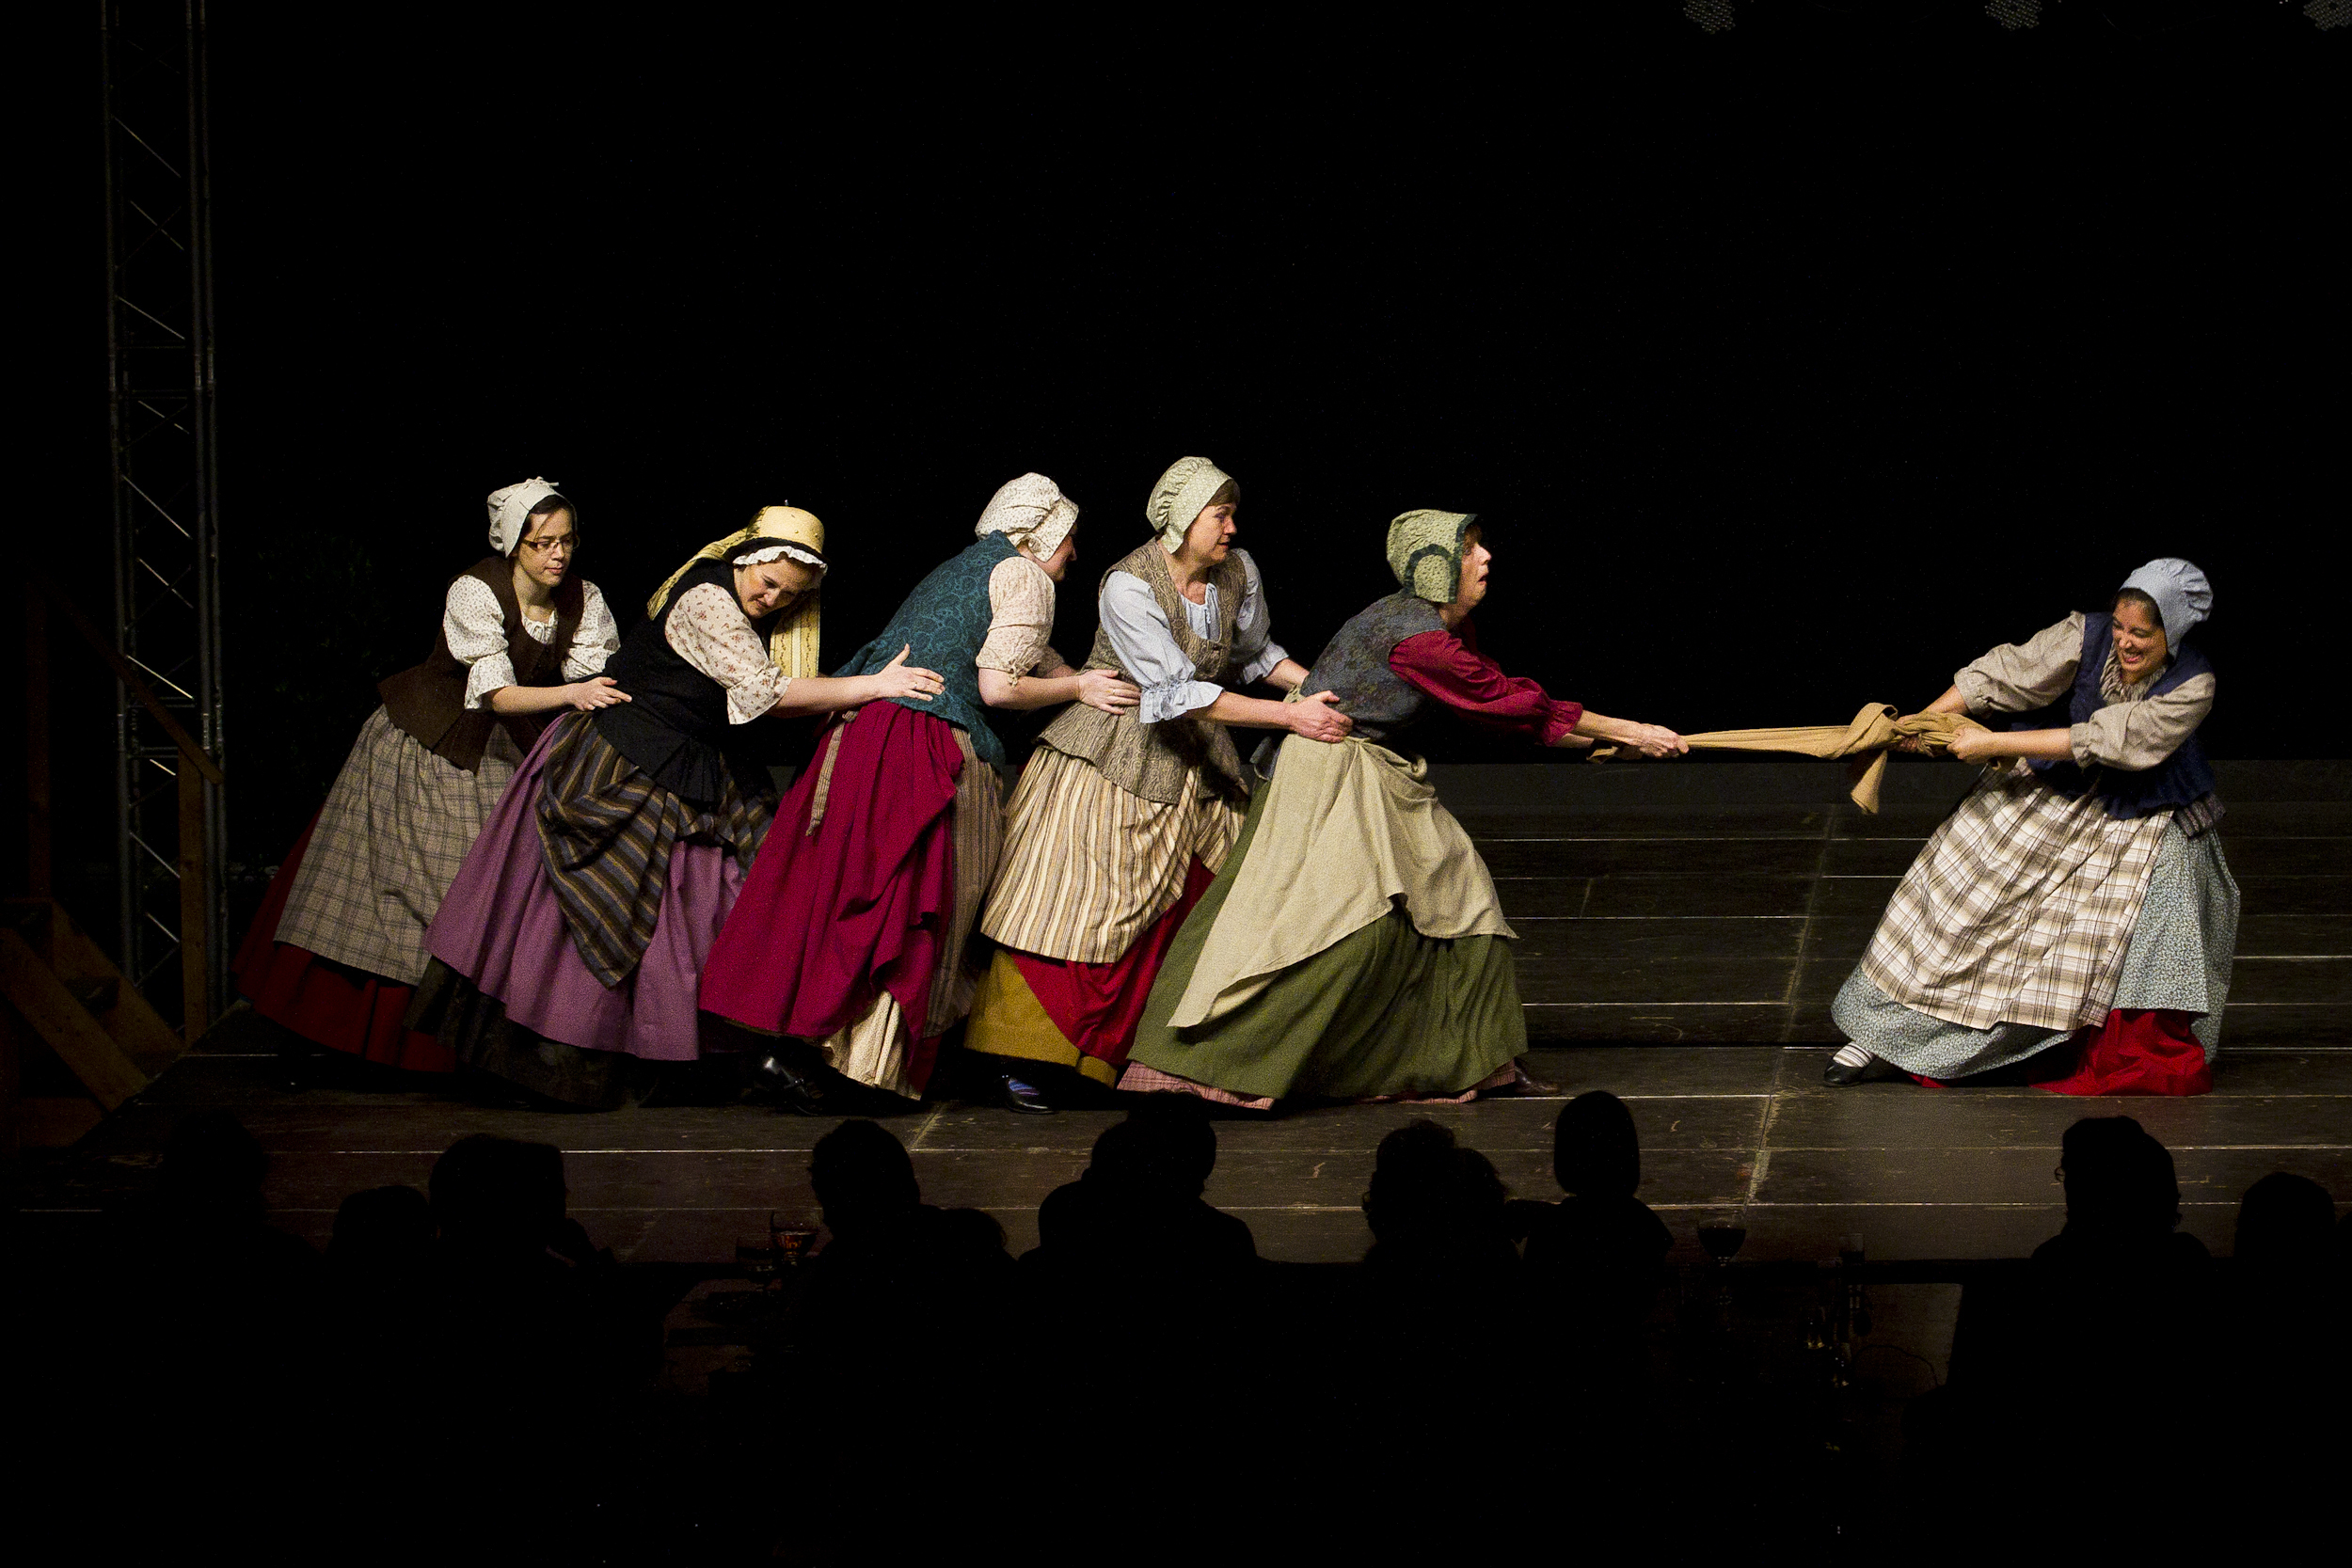 Reuzegomvrouwen in actie tijdens de dans "de broekvent".